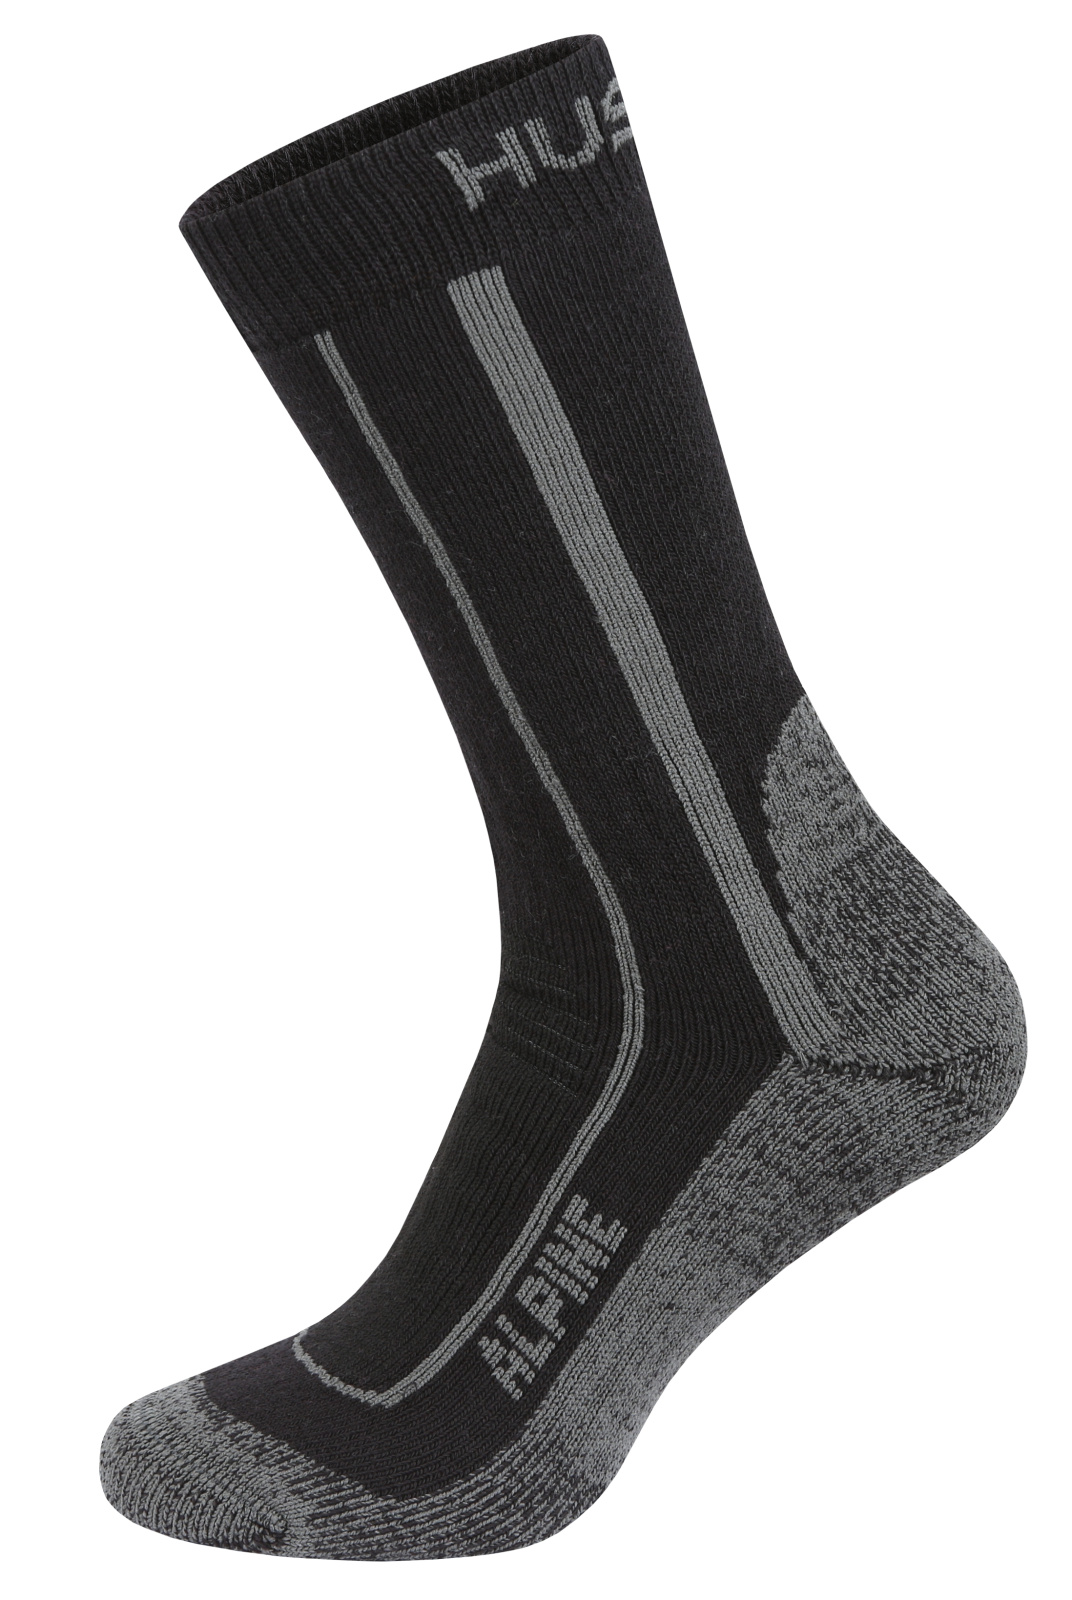 Husky Ponožky Alpine black Velikost: M (36-40) ponožky